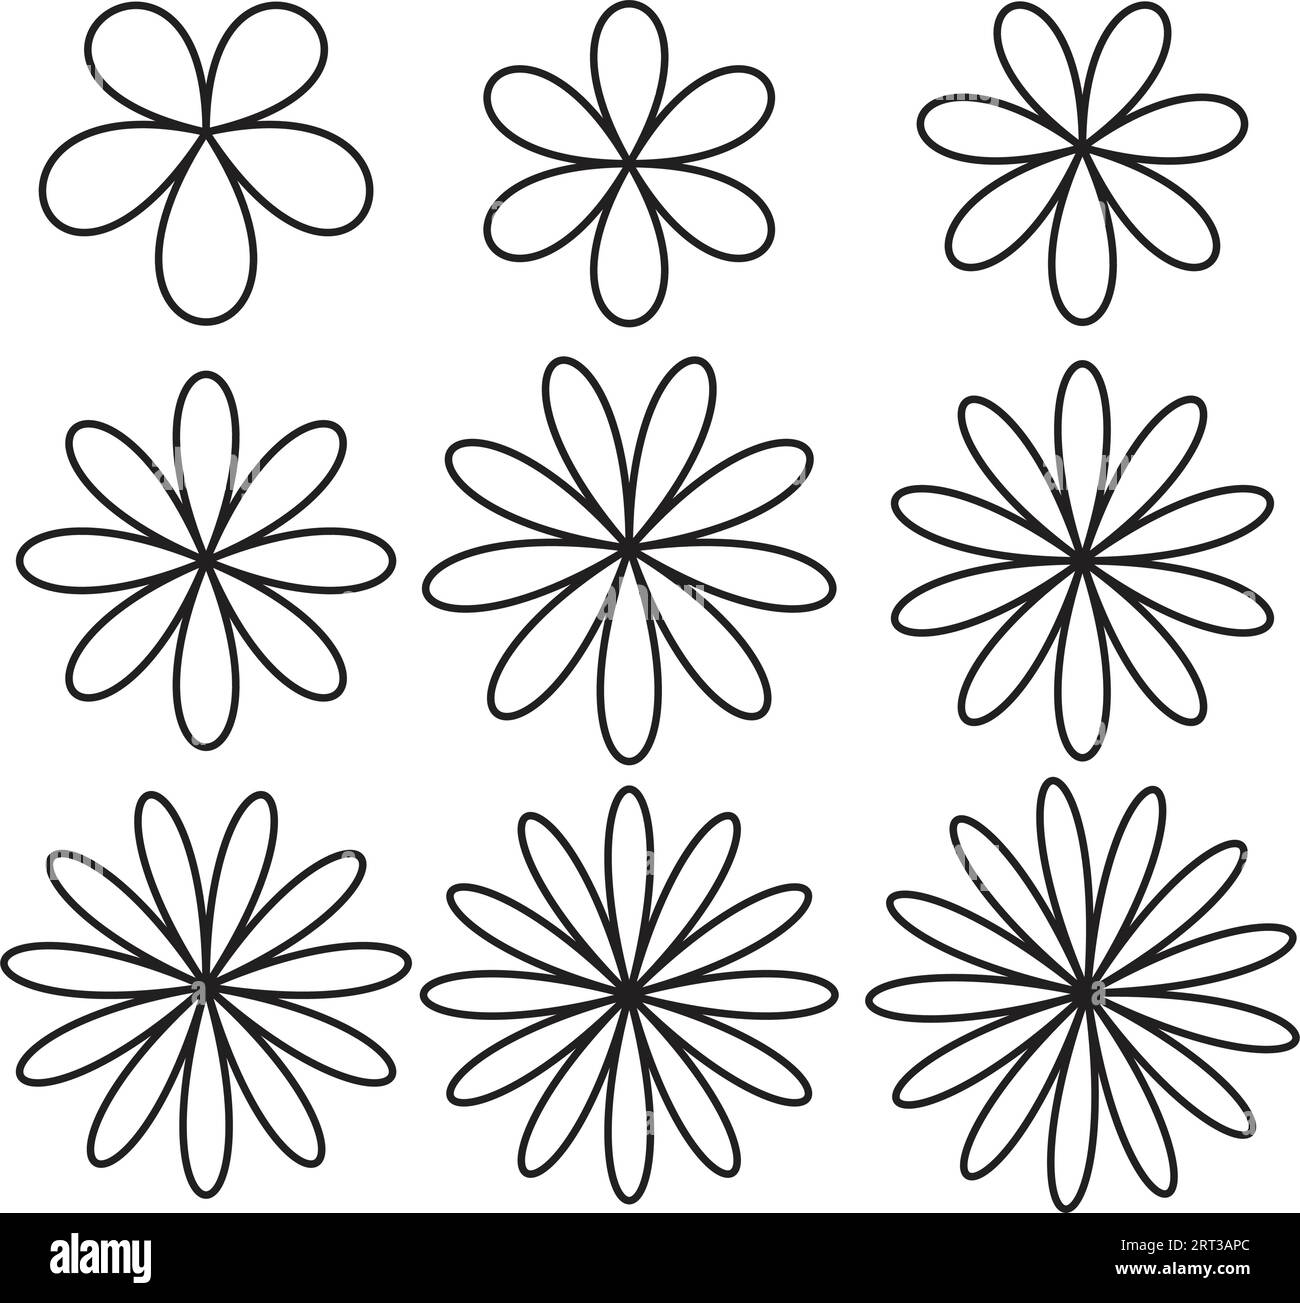 Set von winzigen Blumen mit schwarzen Umrissvektoren botanische Illustrationen. Eine Kollektion inspiriert Flores (Blumen), Zeichentrickaufkleber, Design für Tätowierungen Stock Vektor